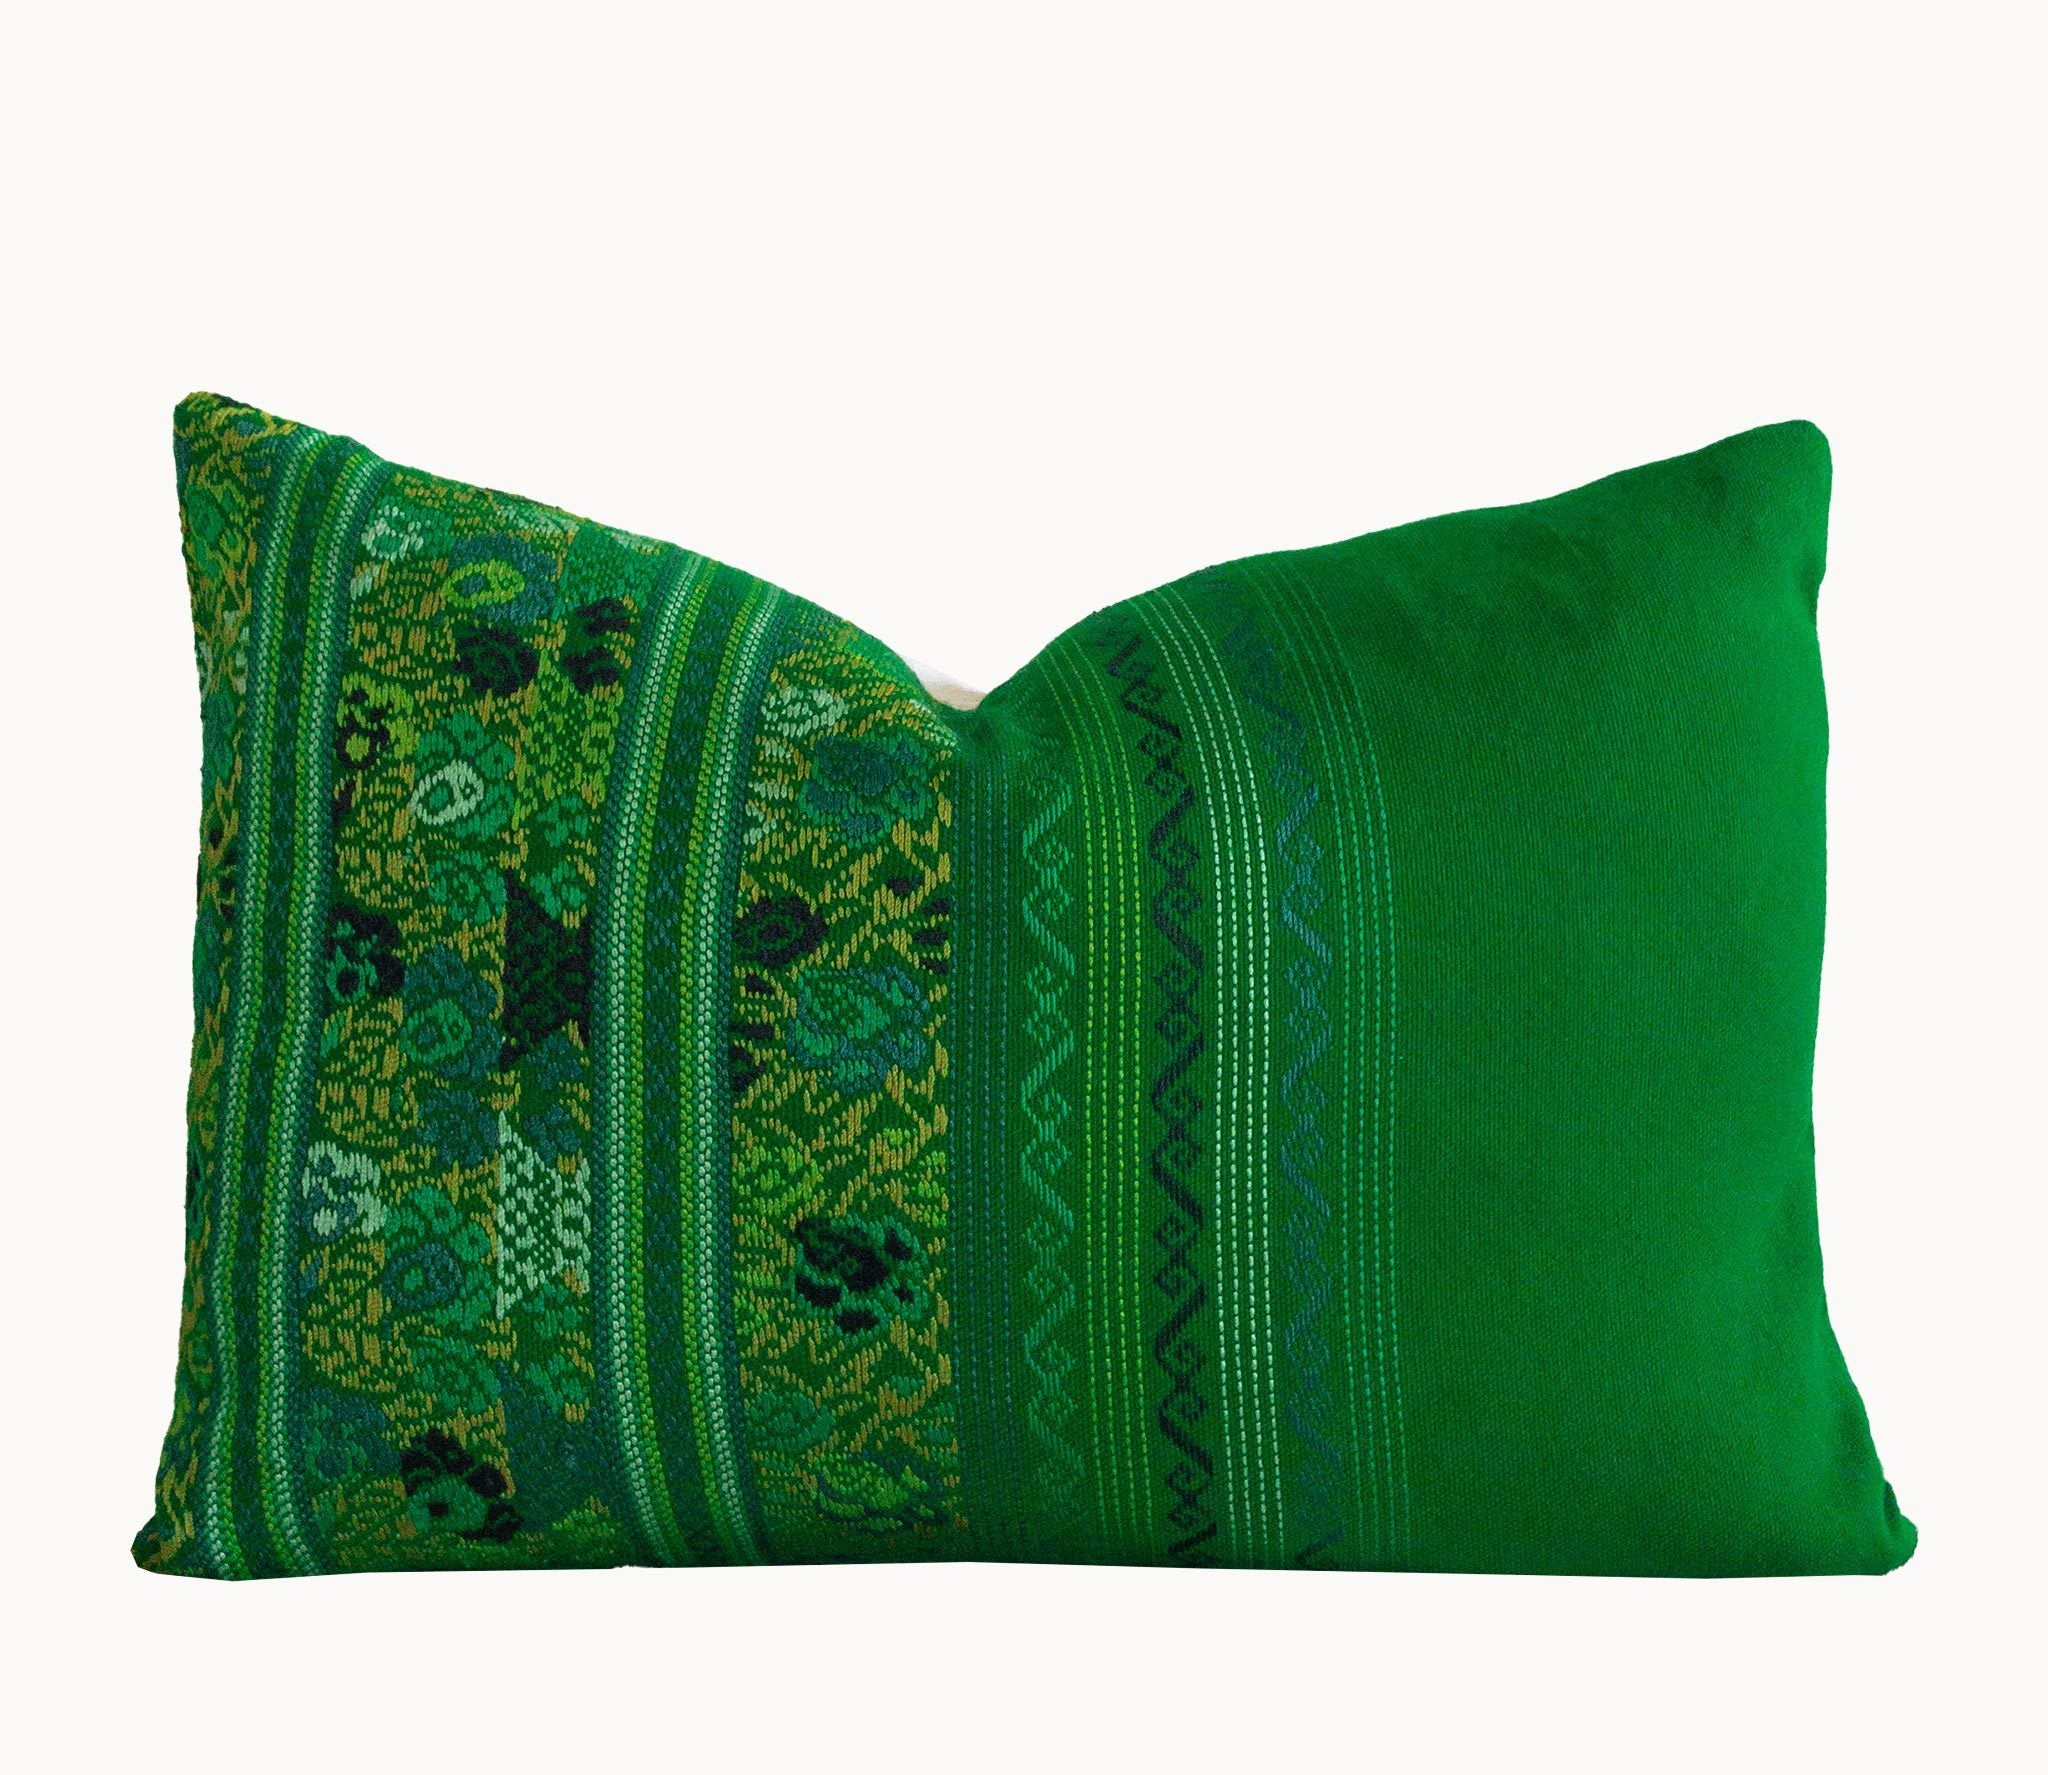 Guatemalan Huipil Pillow, Vintage, hand woven green floral lumbar cushion from Comolapa 